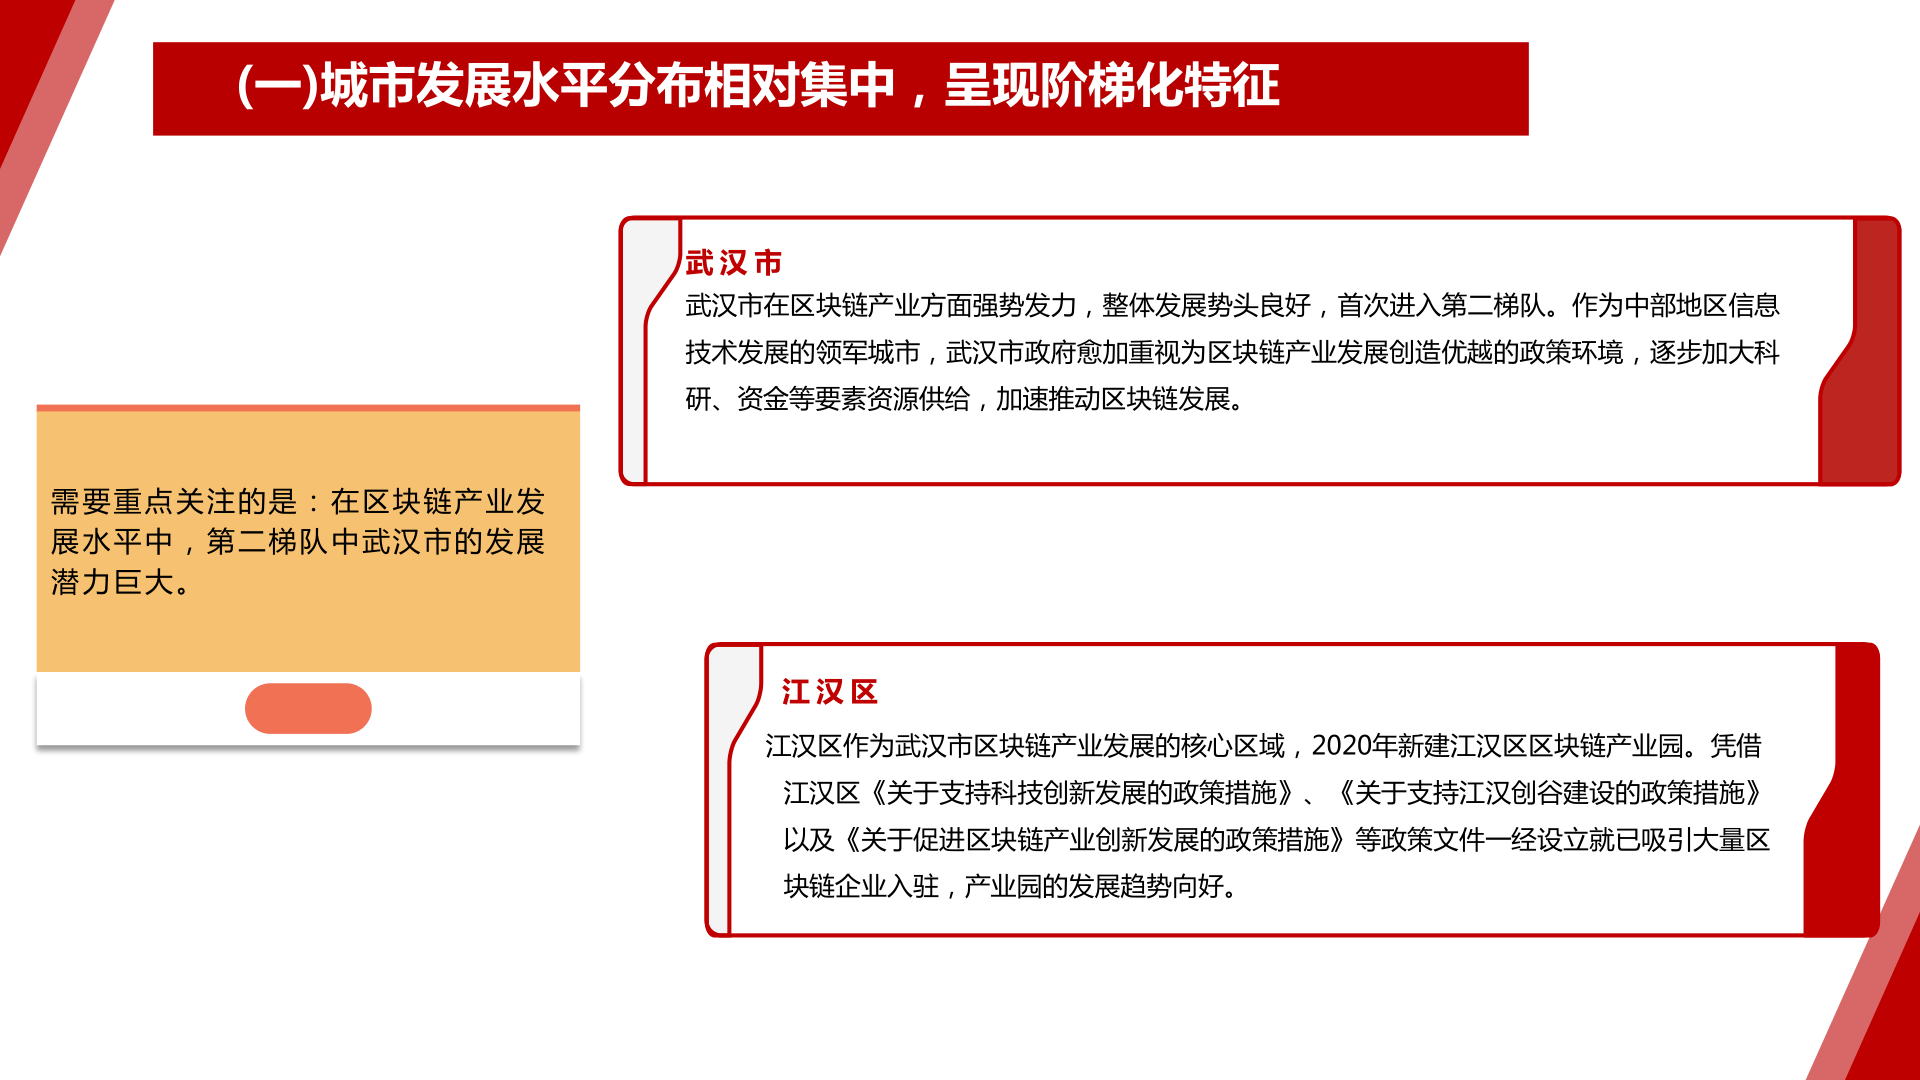 2020-2021中国城市区块链发展水平评估白皮书(附下载)